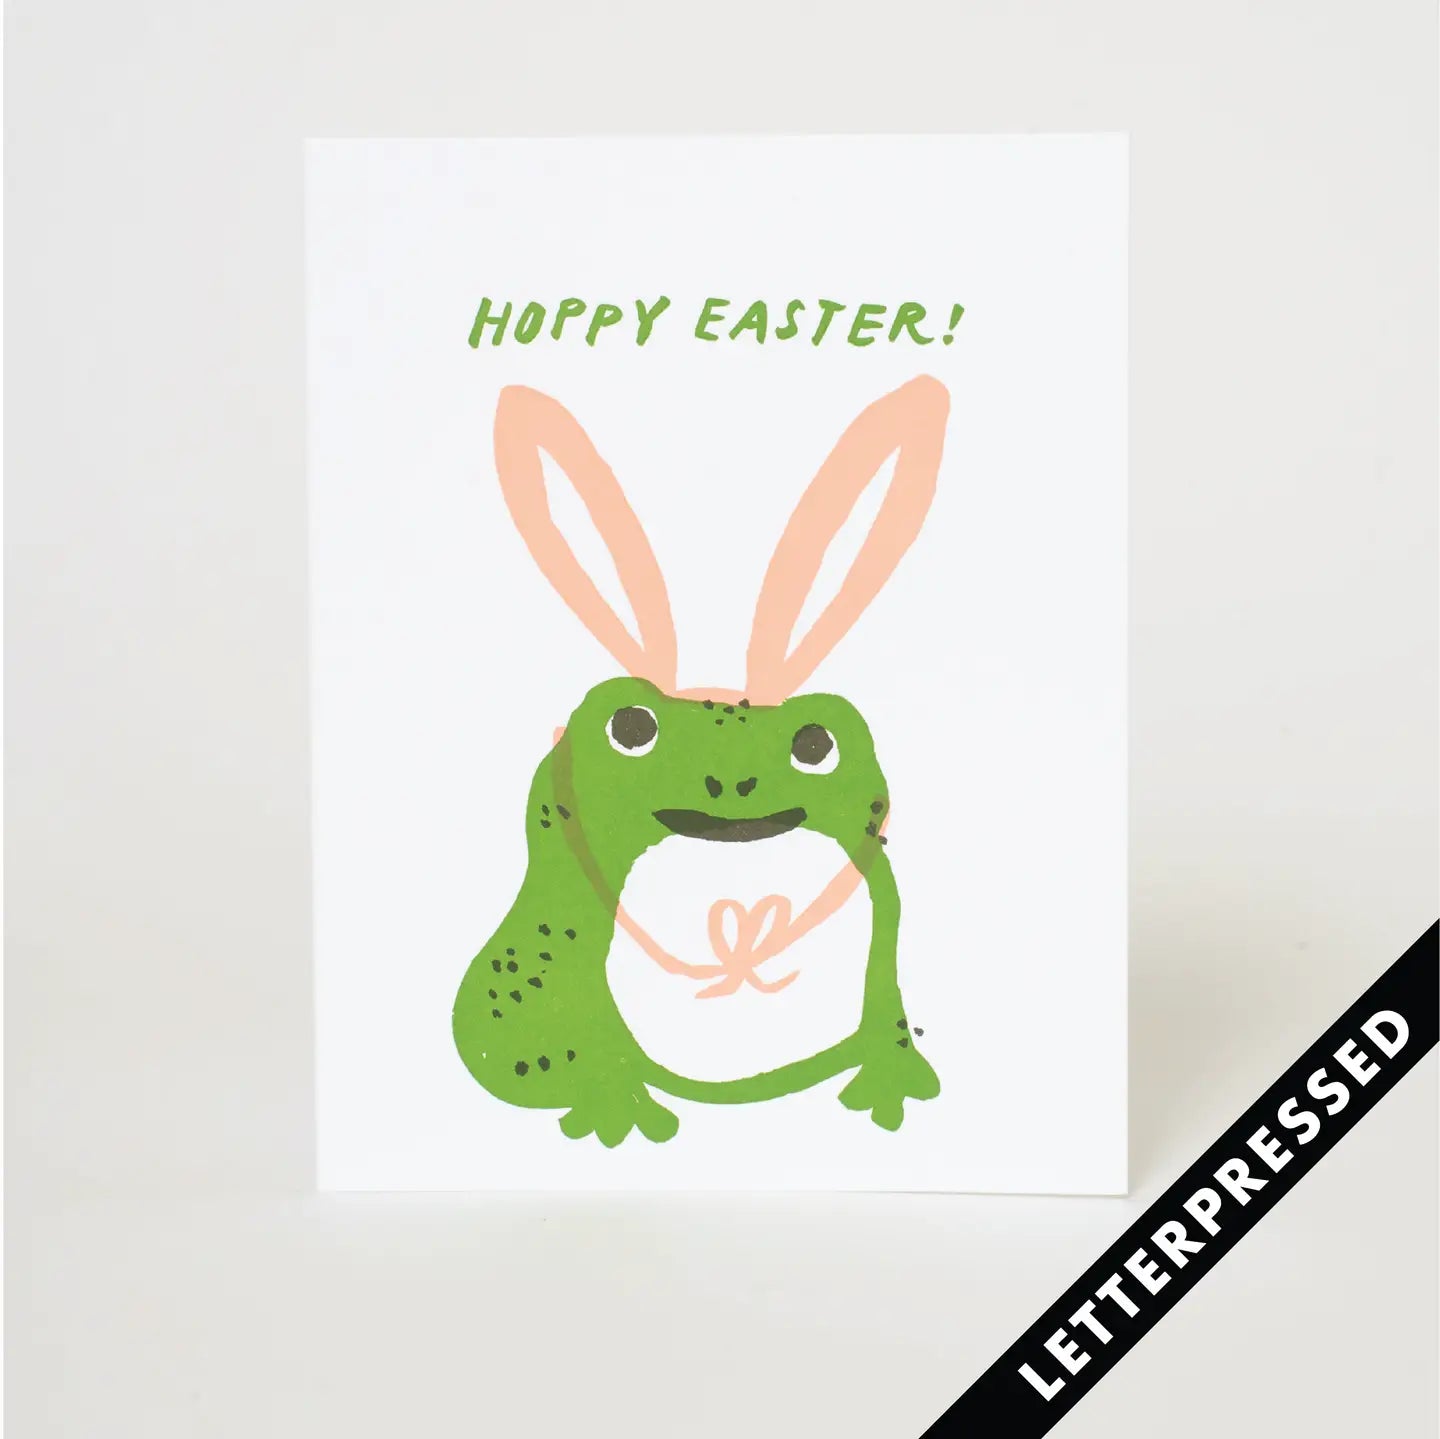 Egg Press Greeting Card - Hoppy Easter Frog